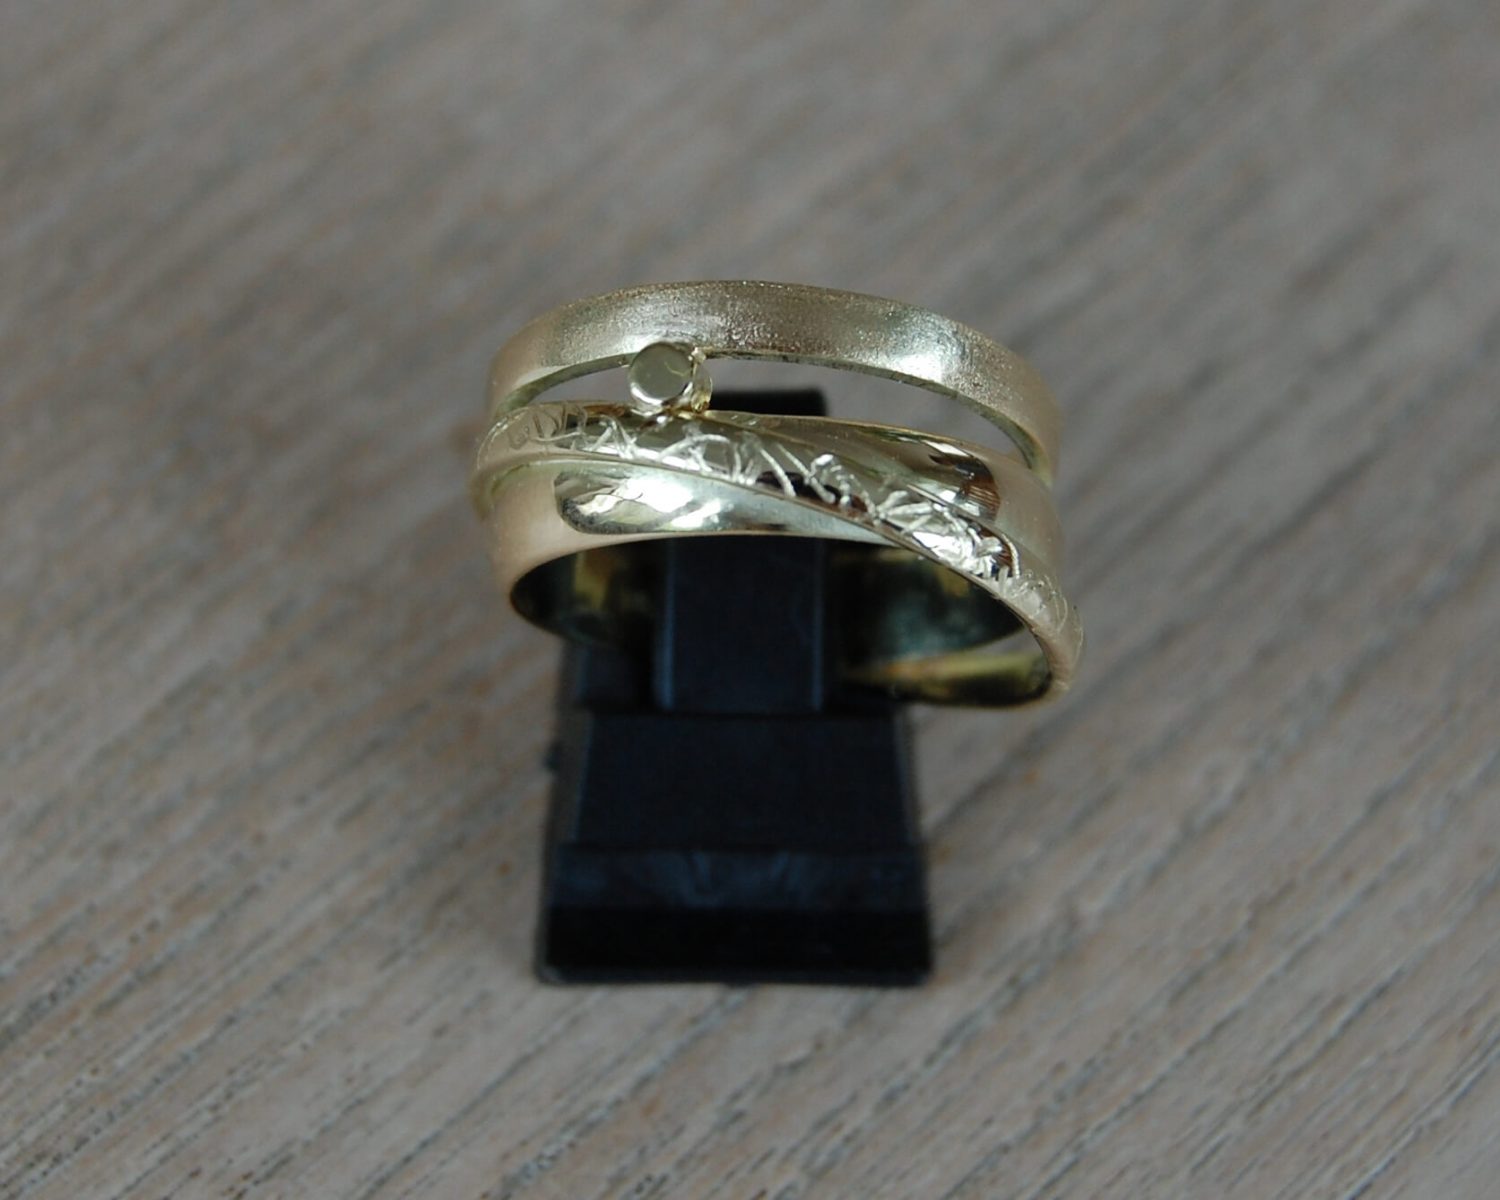 Ring gemaakt uit aangeleverde trouwringen en een derde ring, waarbij de gravures bewaard zijn gebleven - inclusief asbusje.